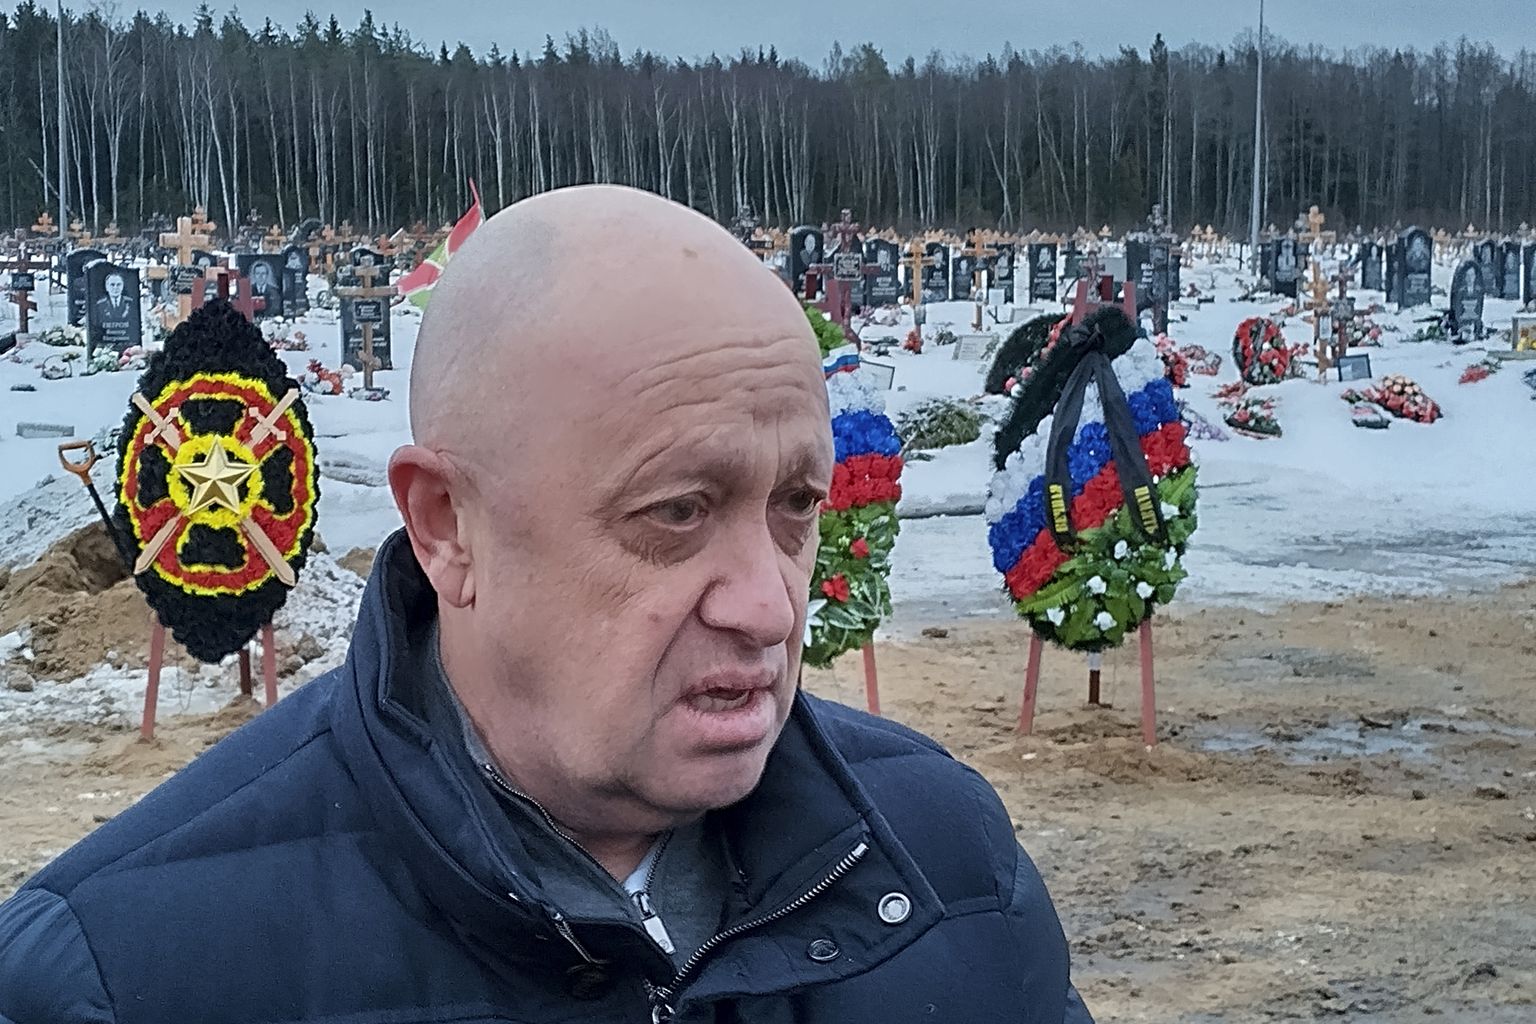 Евгений Пригожин, глава ЧВК Вагнера, известный, как «повар Путина», на похоронах своих бойцов, Санкт-Петербрг, 24 декабря 2022 года.